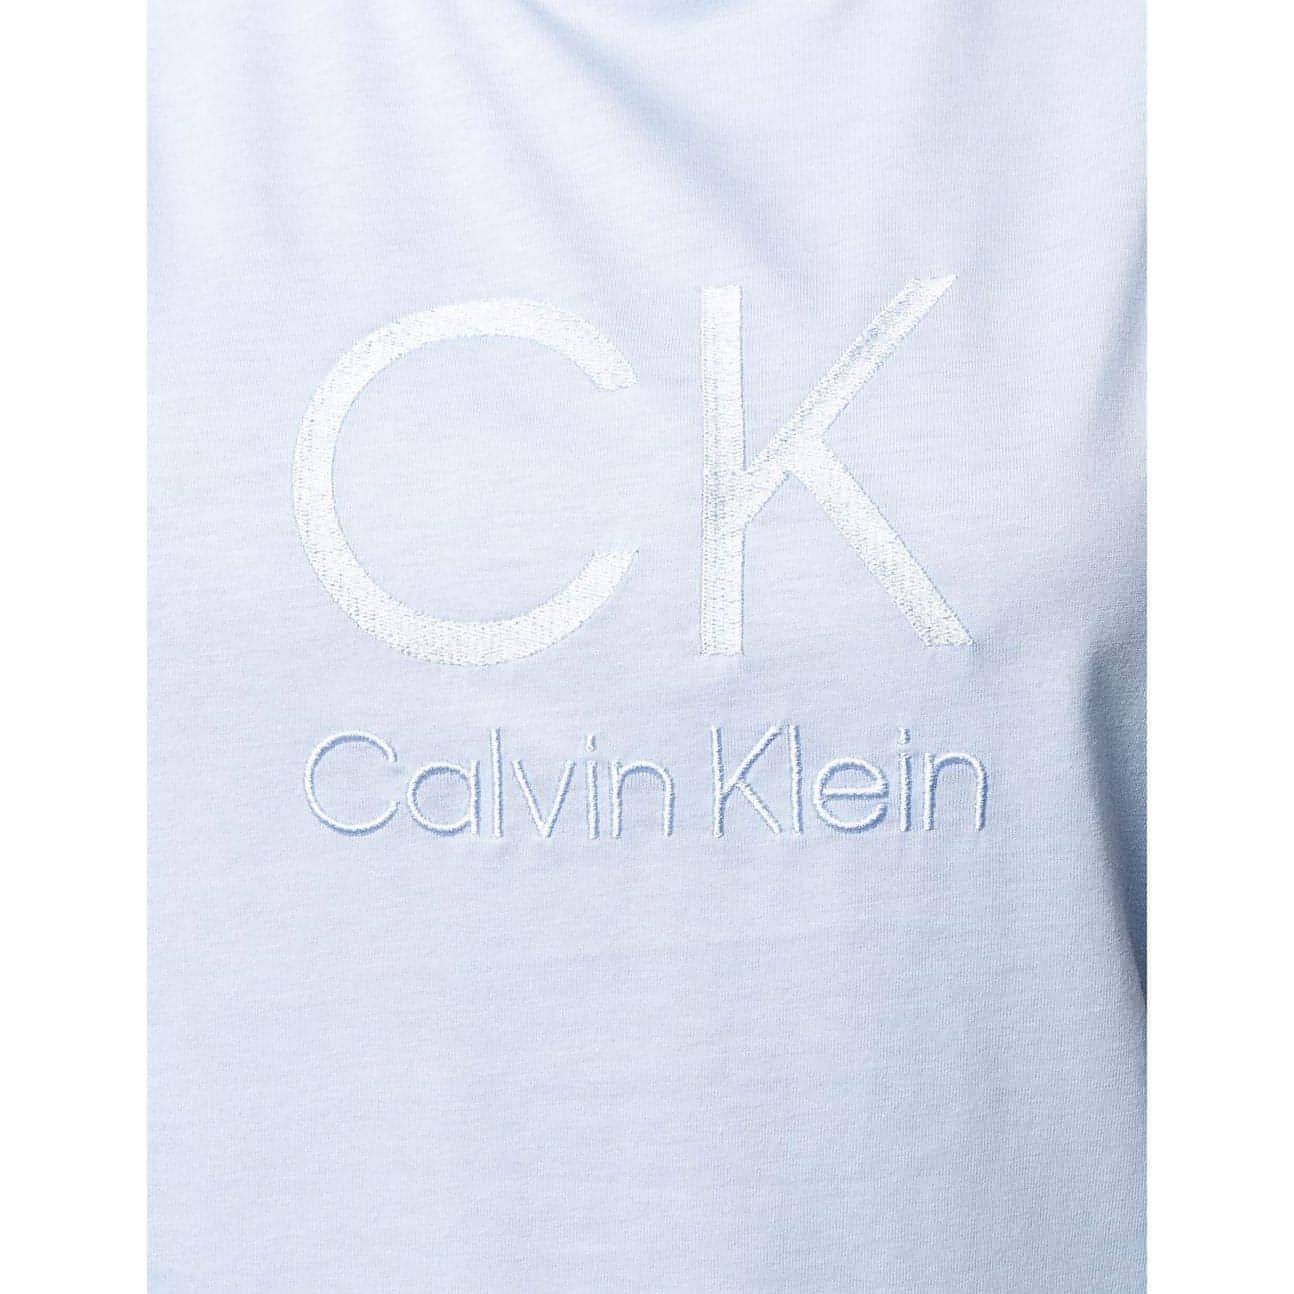 CALVIN KLEIN moteriški mėlyni marškinėliai